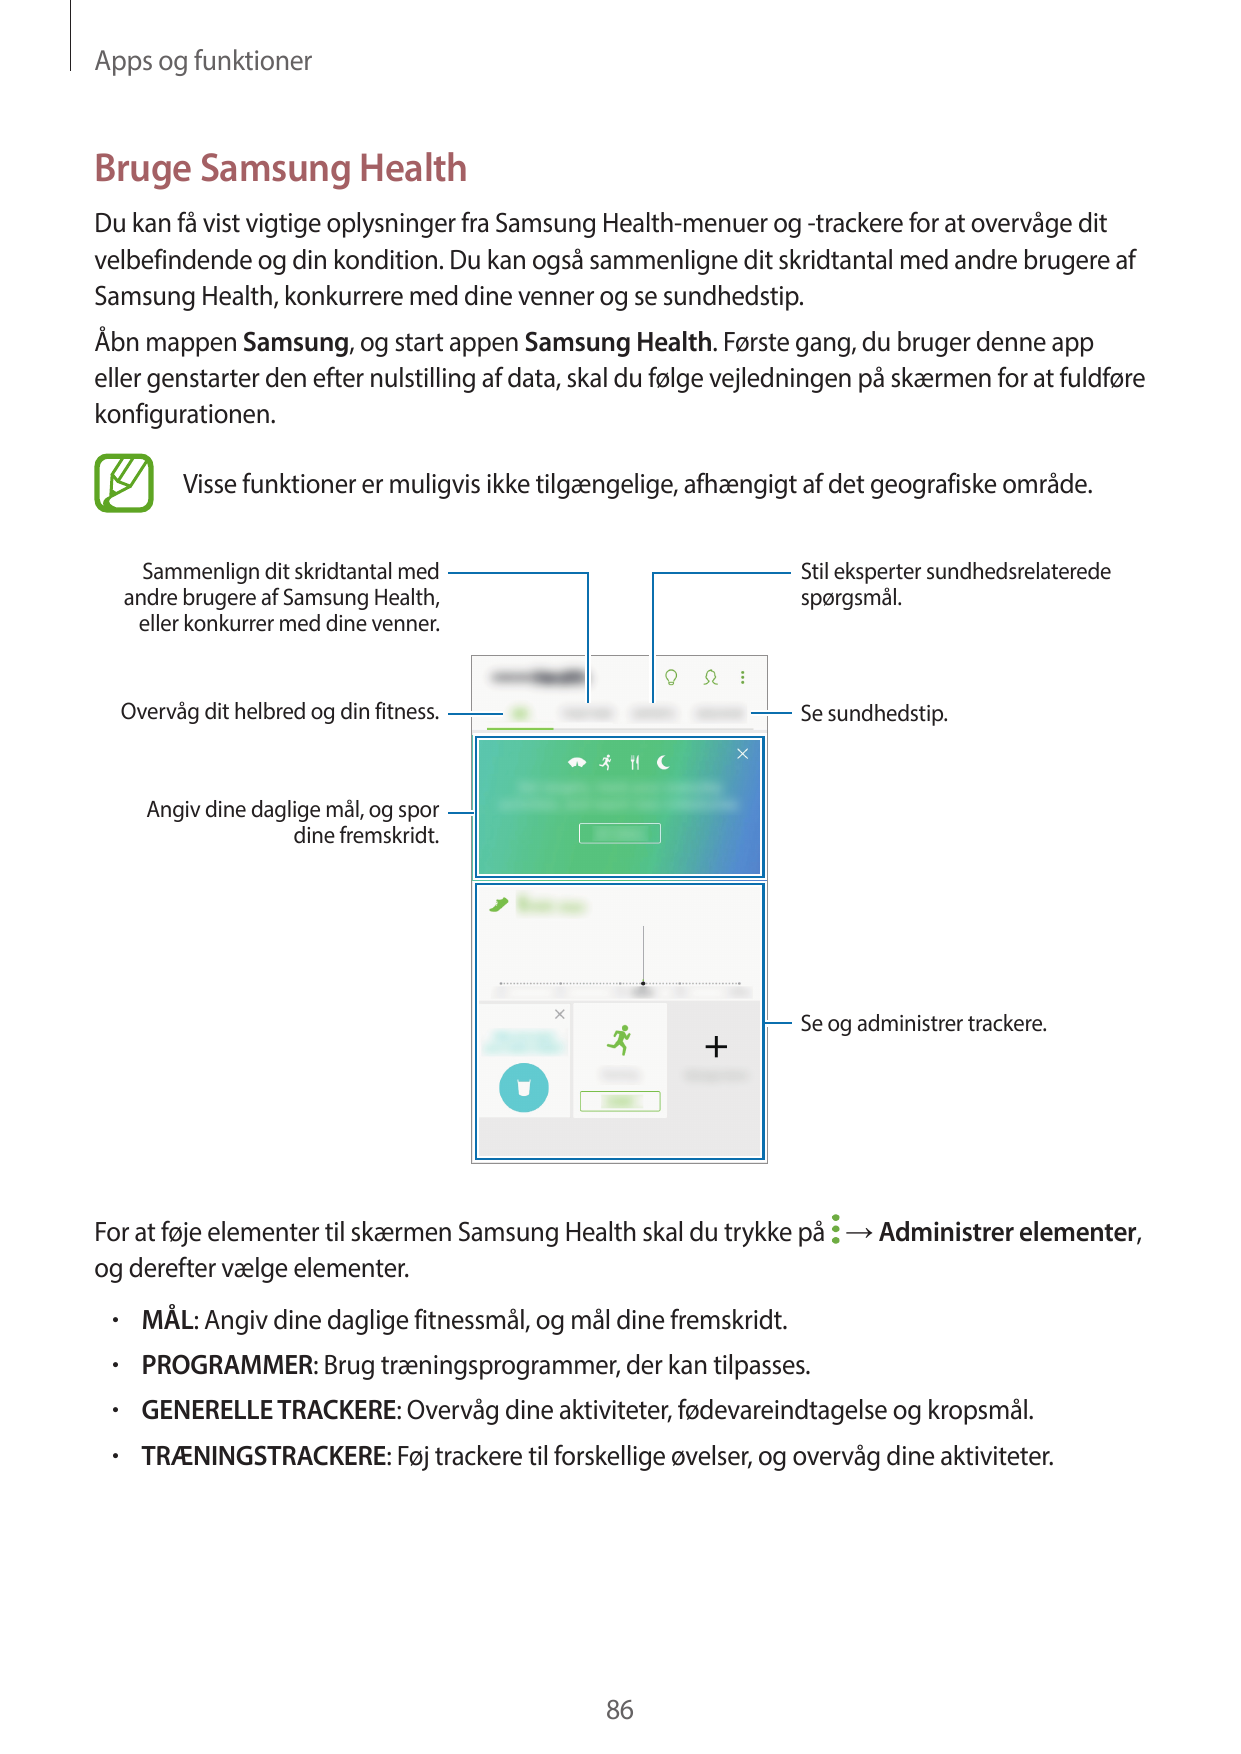 Apps og funktionerBruge Samsung HealthDu kan få vist vigtige oplysninger fra Samsung Health-menuer og -trackere for at overvåge 